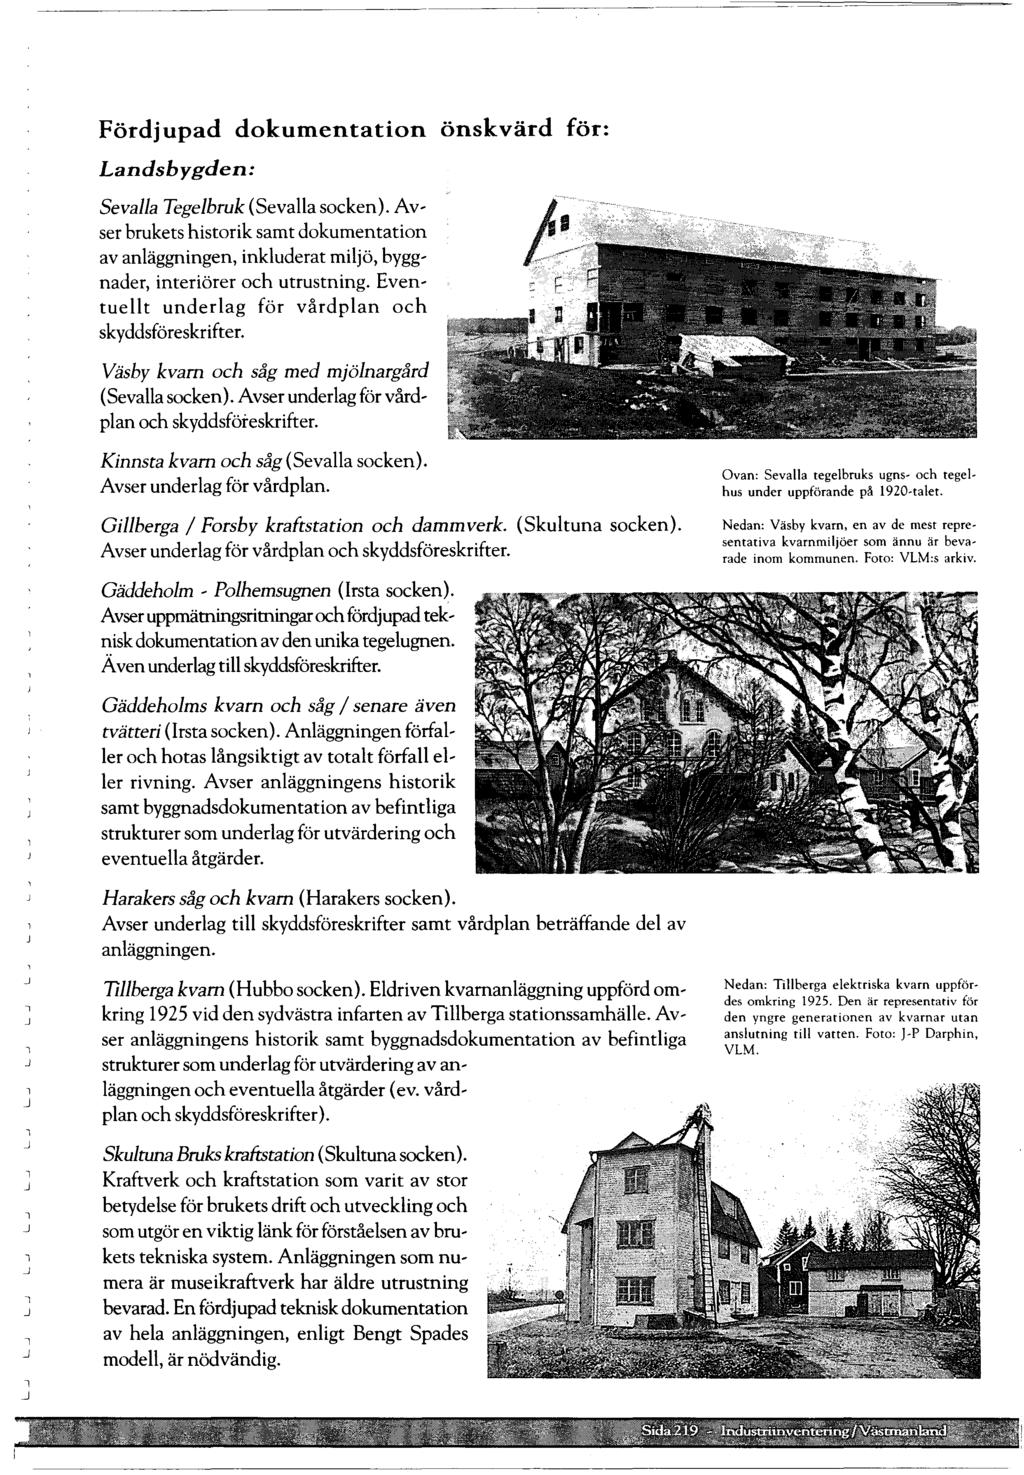 Fördjupad dokumentation önskvärd för: Landsbygden: Sevaa Tegebruk (Sevaa socken). Av, ser brukets historik samt dokumentation av anäggningen, inkuderat mijö, bygg' nader, interiörer och utrustning.